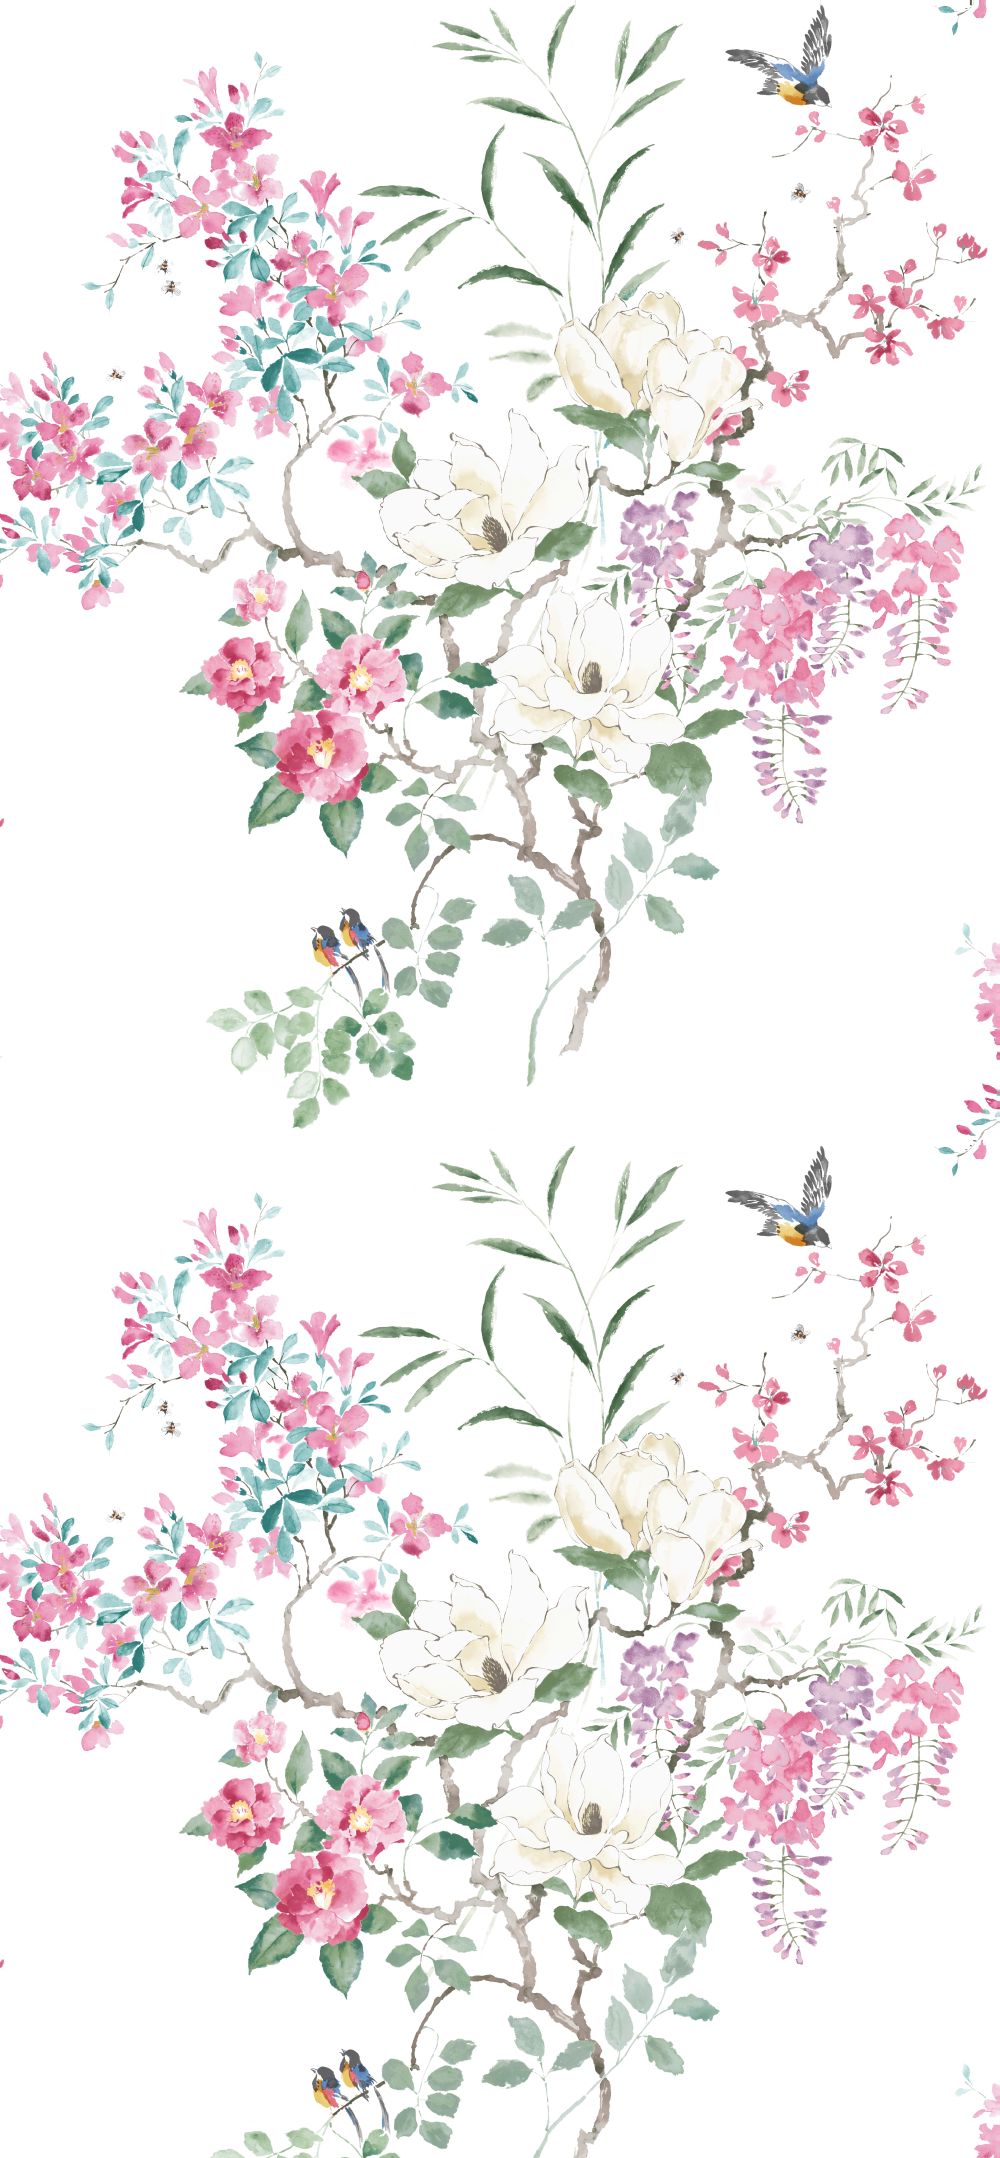 Magnolia & Blossom Panel A Mural - Multi - by Sanderson